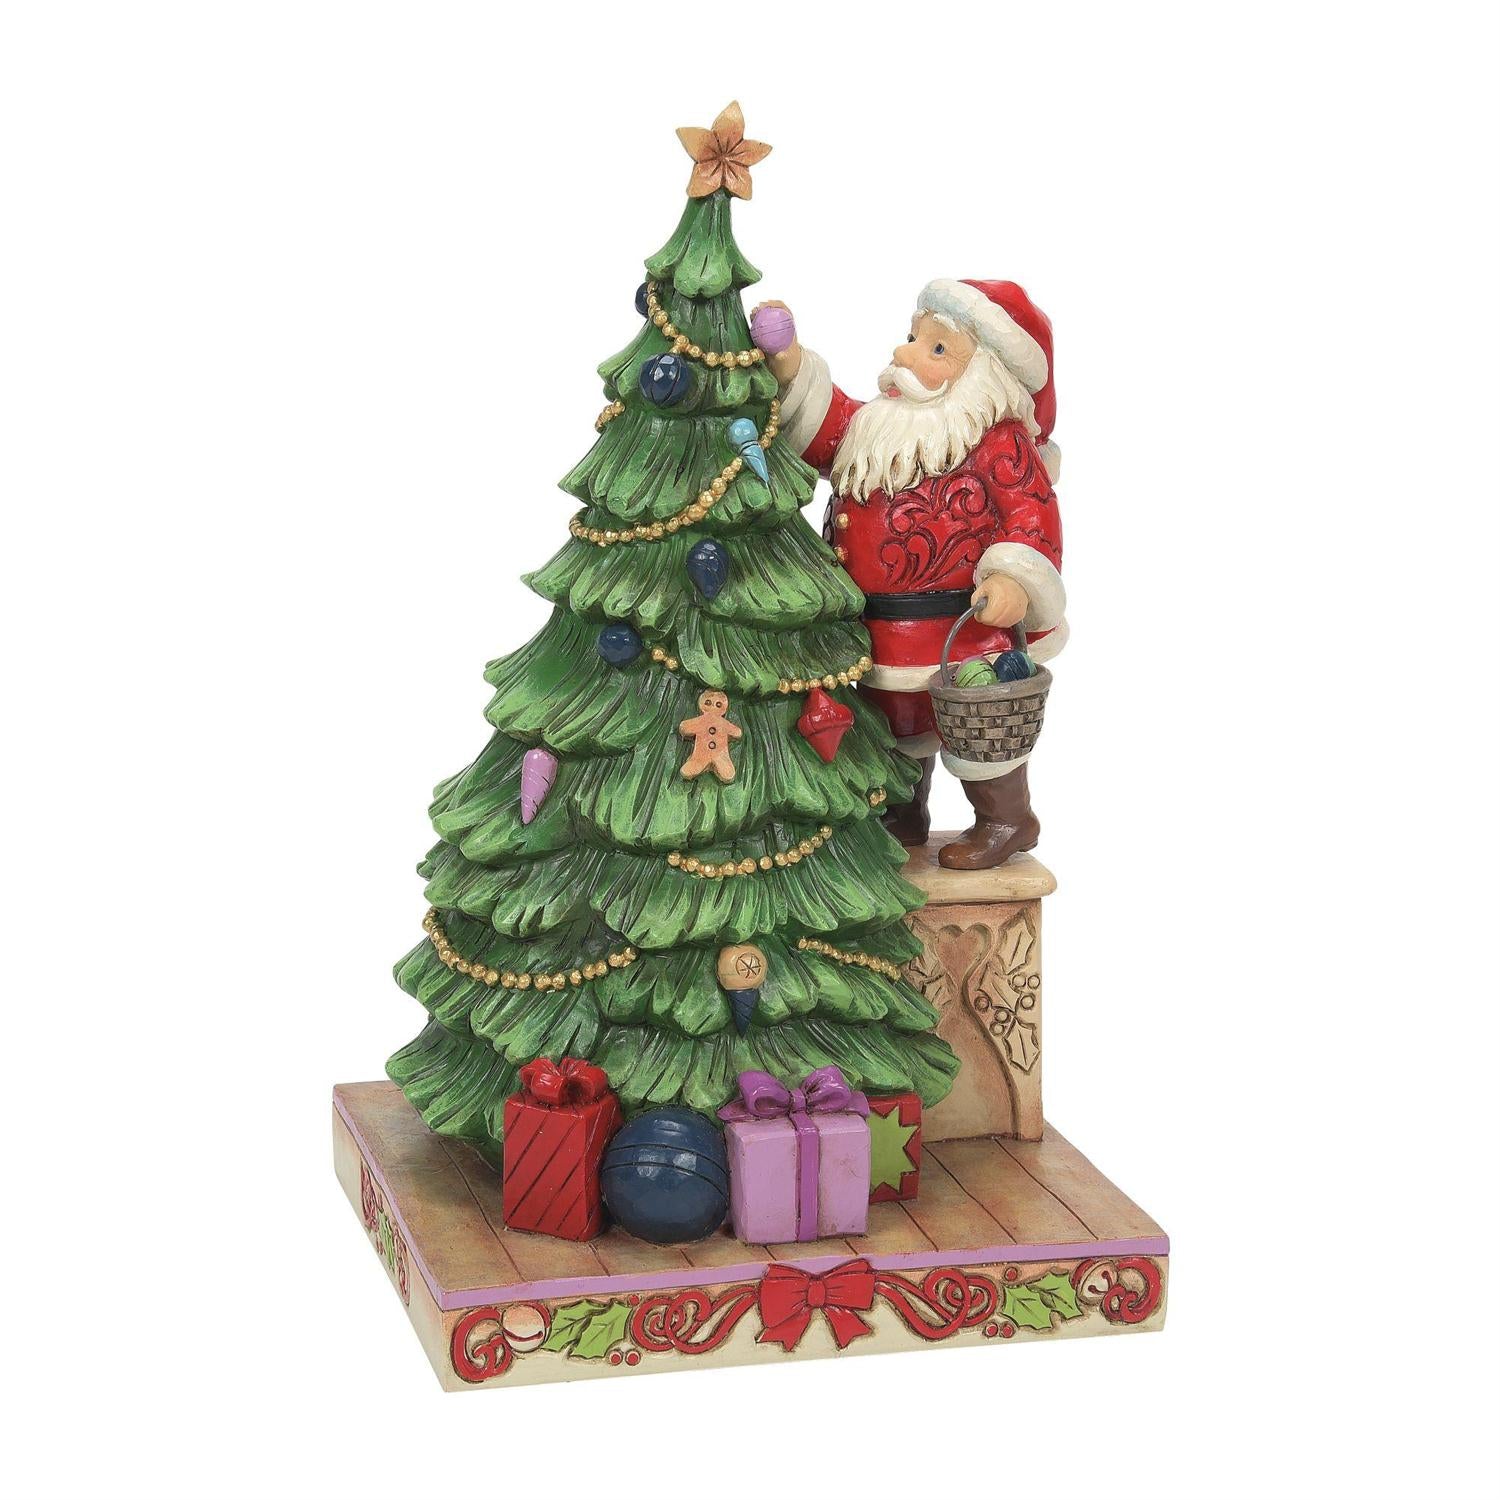 Santa Decorating the Tree - Lake Norman Gifts